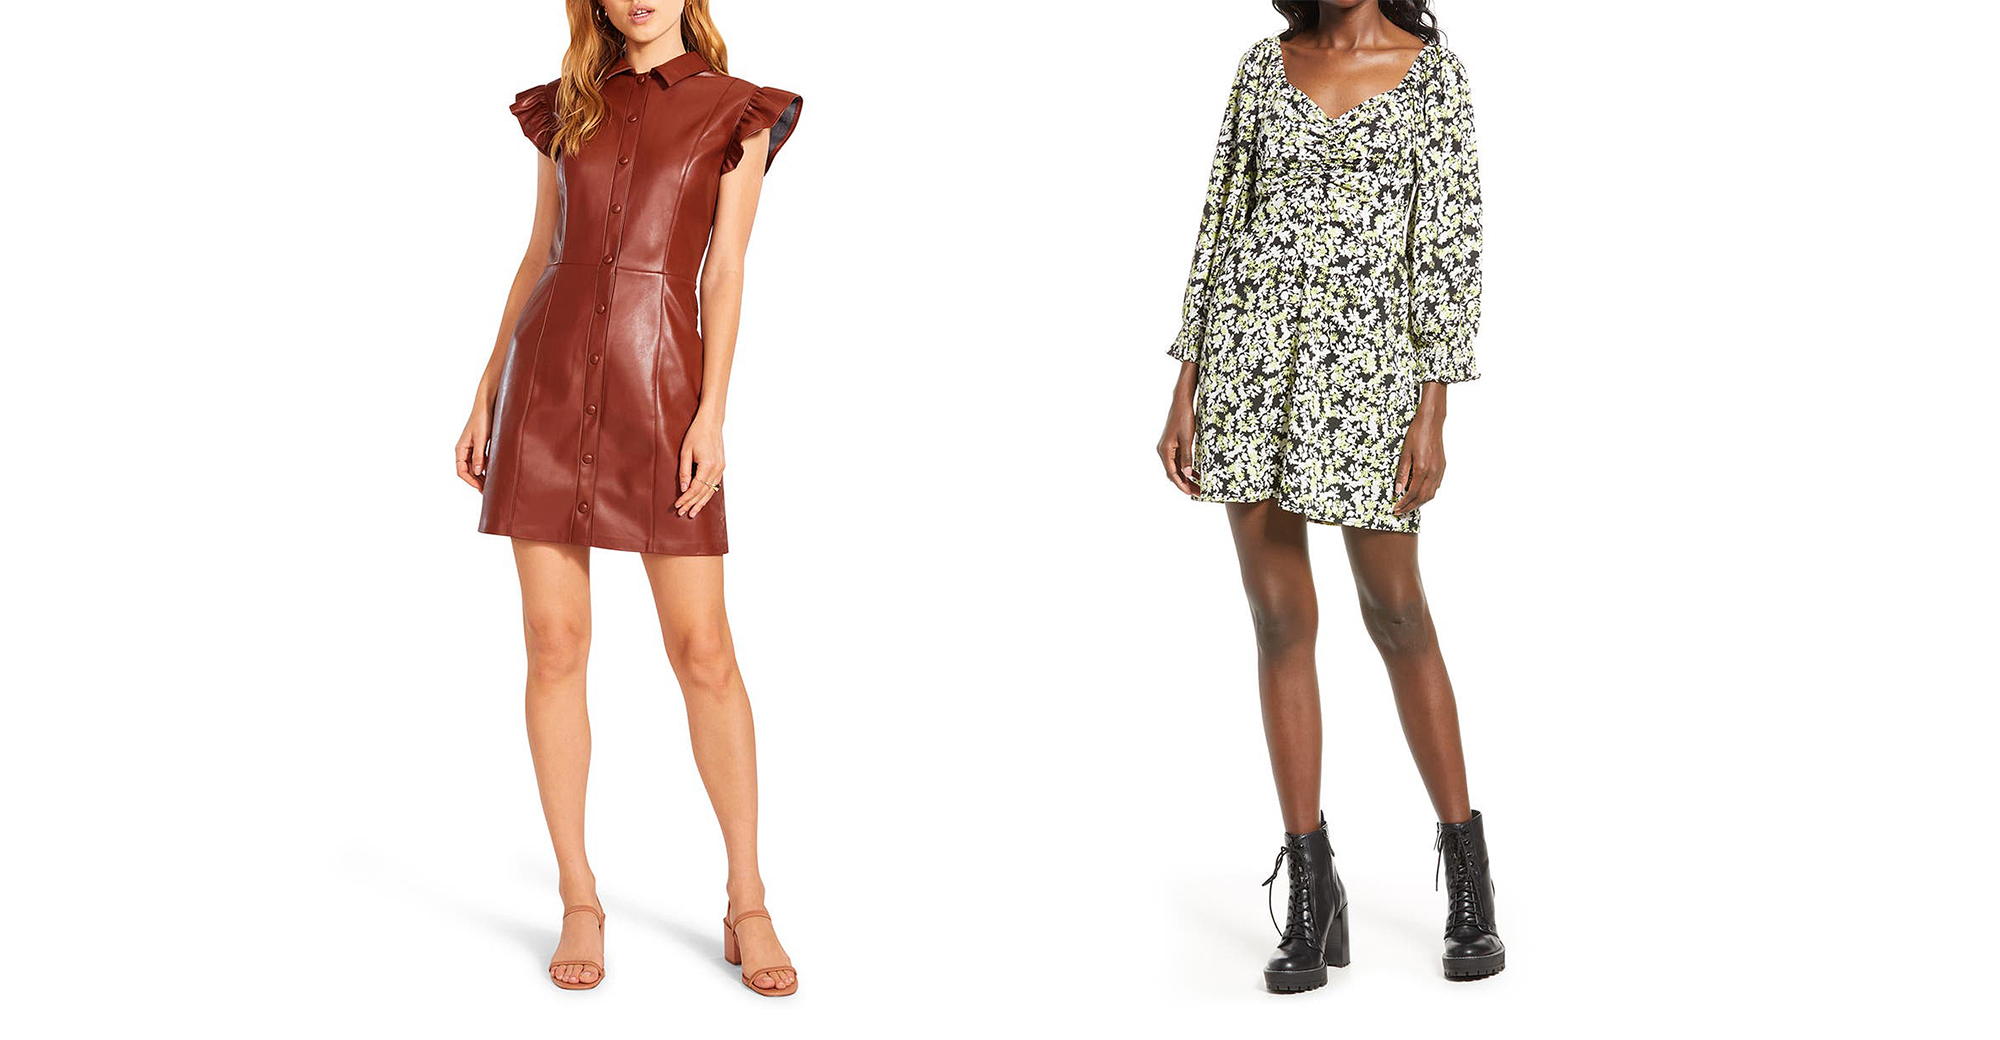 Zara-Style Nordstrom Anniversary Sale Deals: 11 Fashion Picks